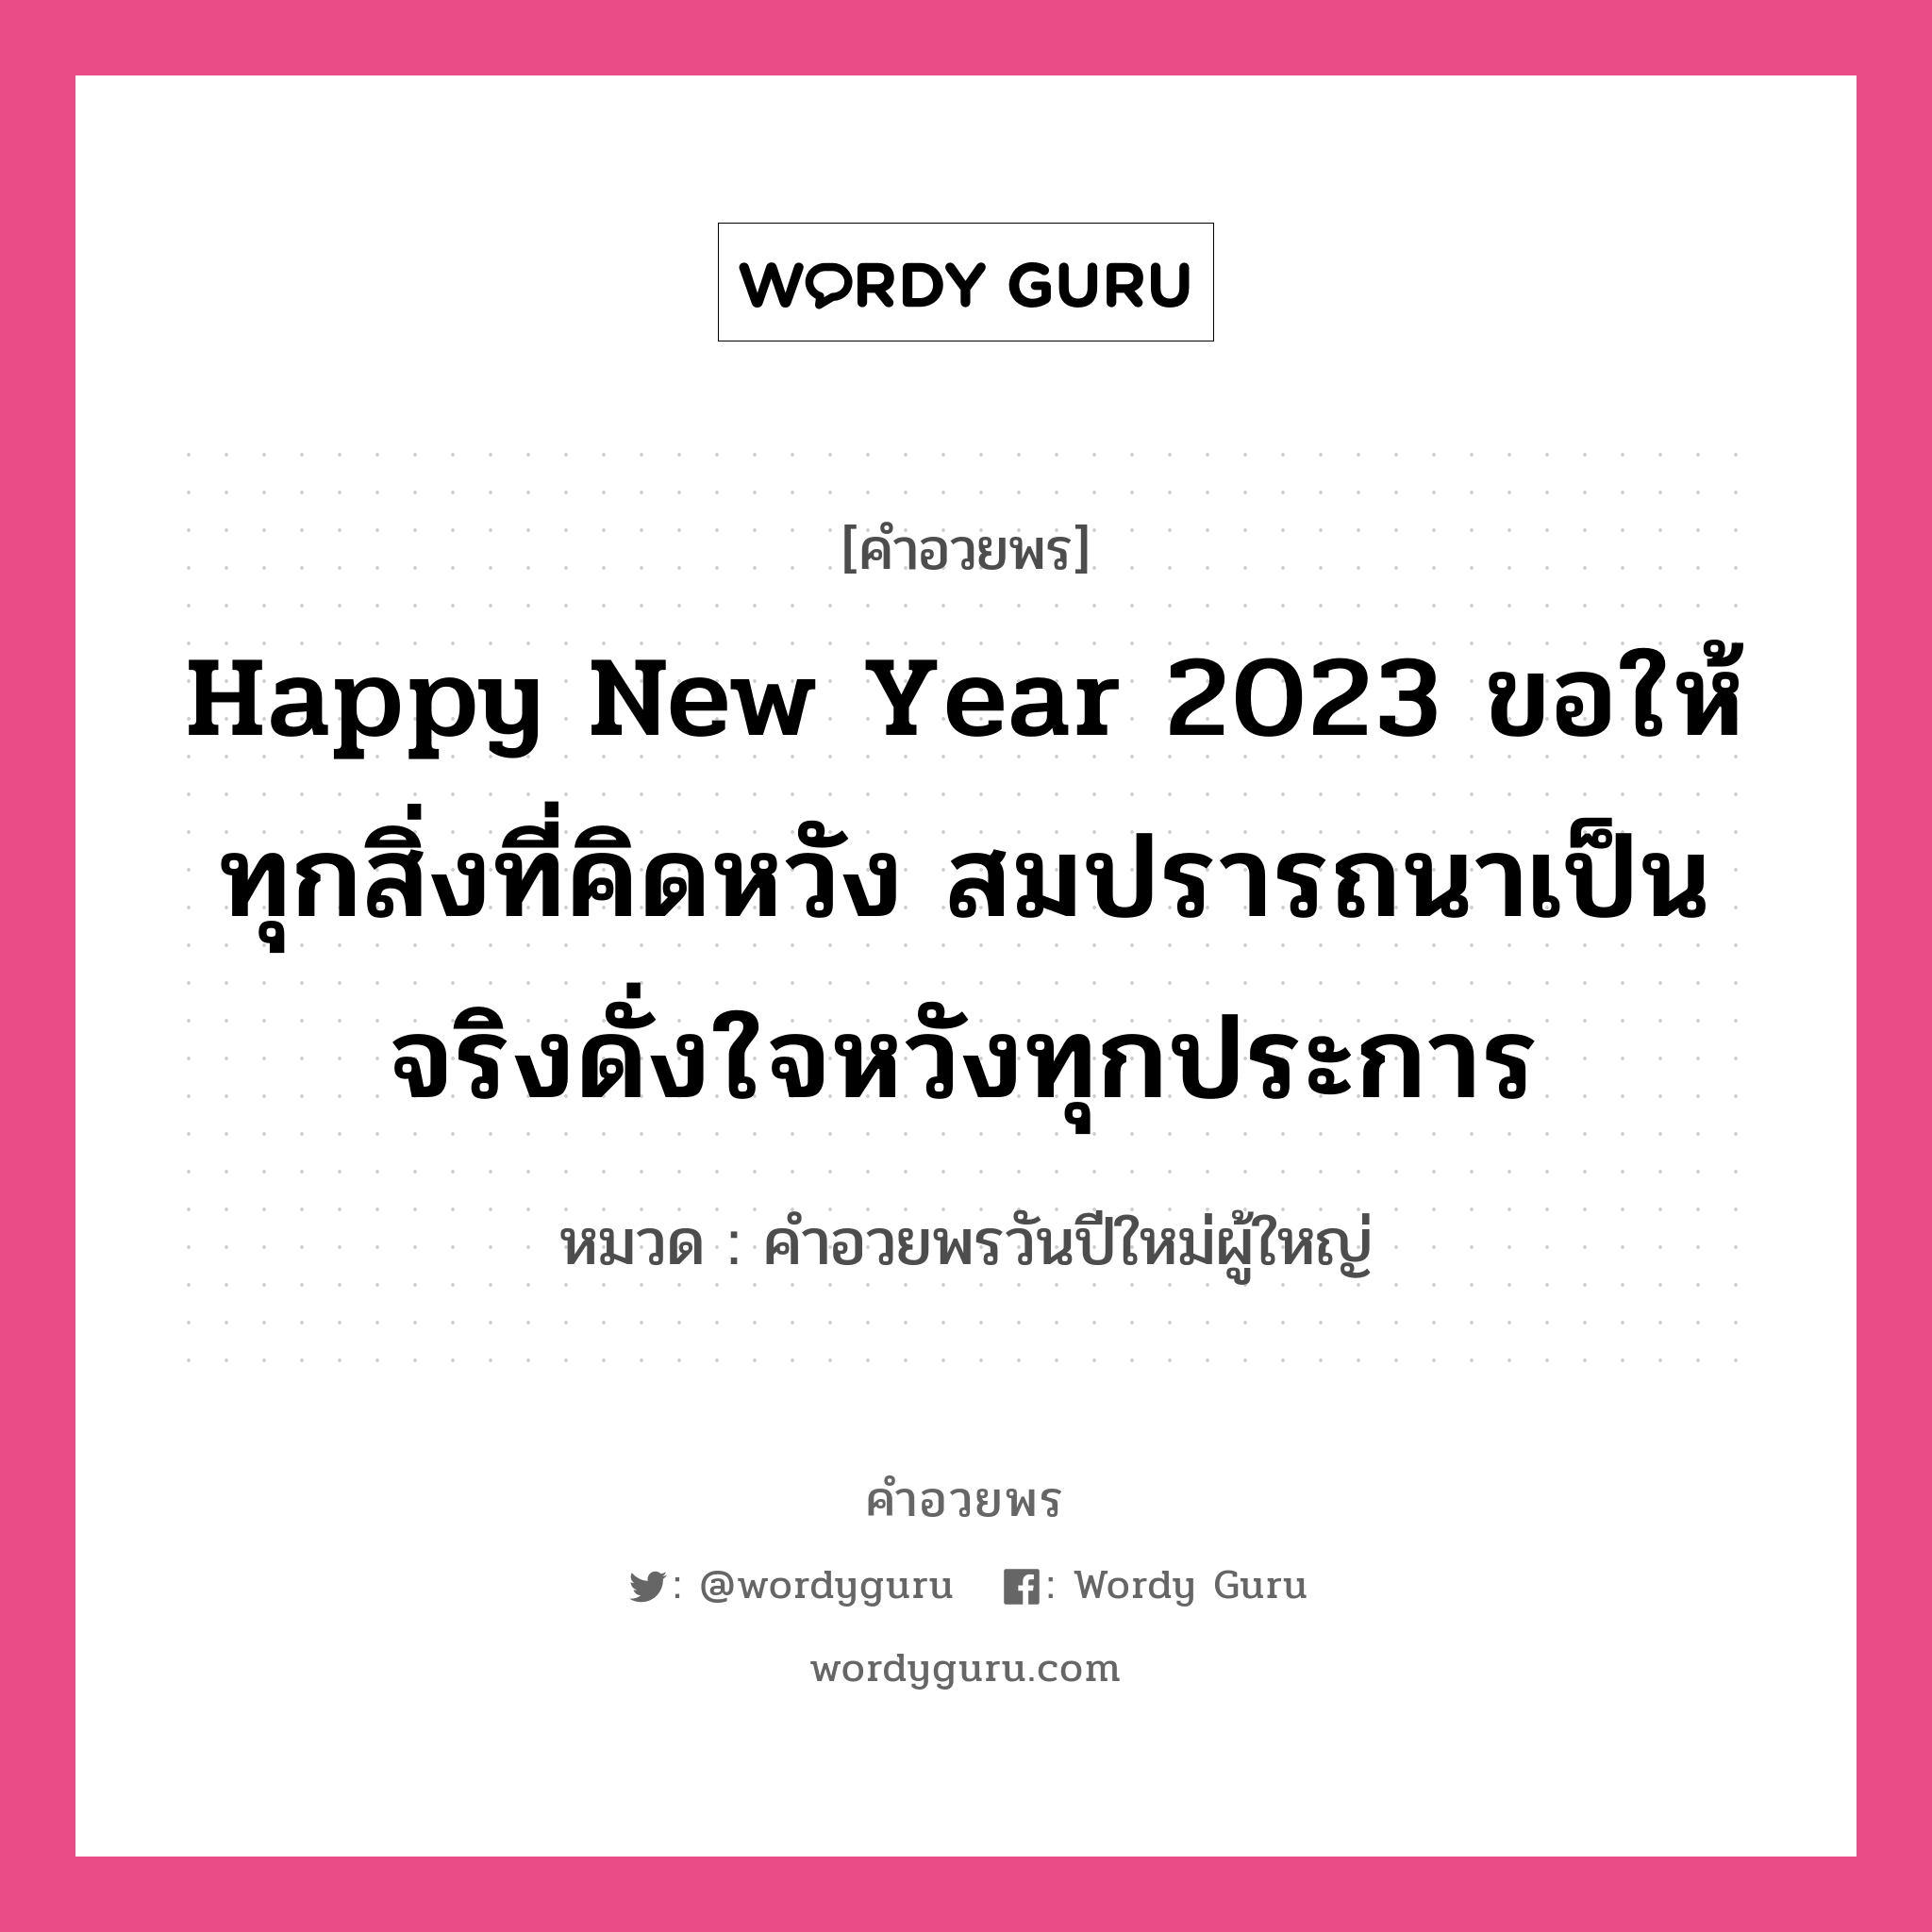 คำอวยพร Happy New Year 2023 ขอให้ทุกสิ่งที่คิดหวัง สมปรารถนาเป็นจริงดั่งใจหวังทุกประการ คืออะไร?, หมวด คำอวยพรวันปีใหม่ผู้ใหญ่ หมวด คำอวยพรวันปีใหม่ผู้ใหญ่